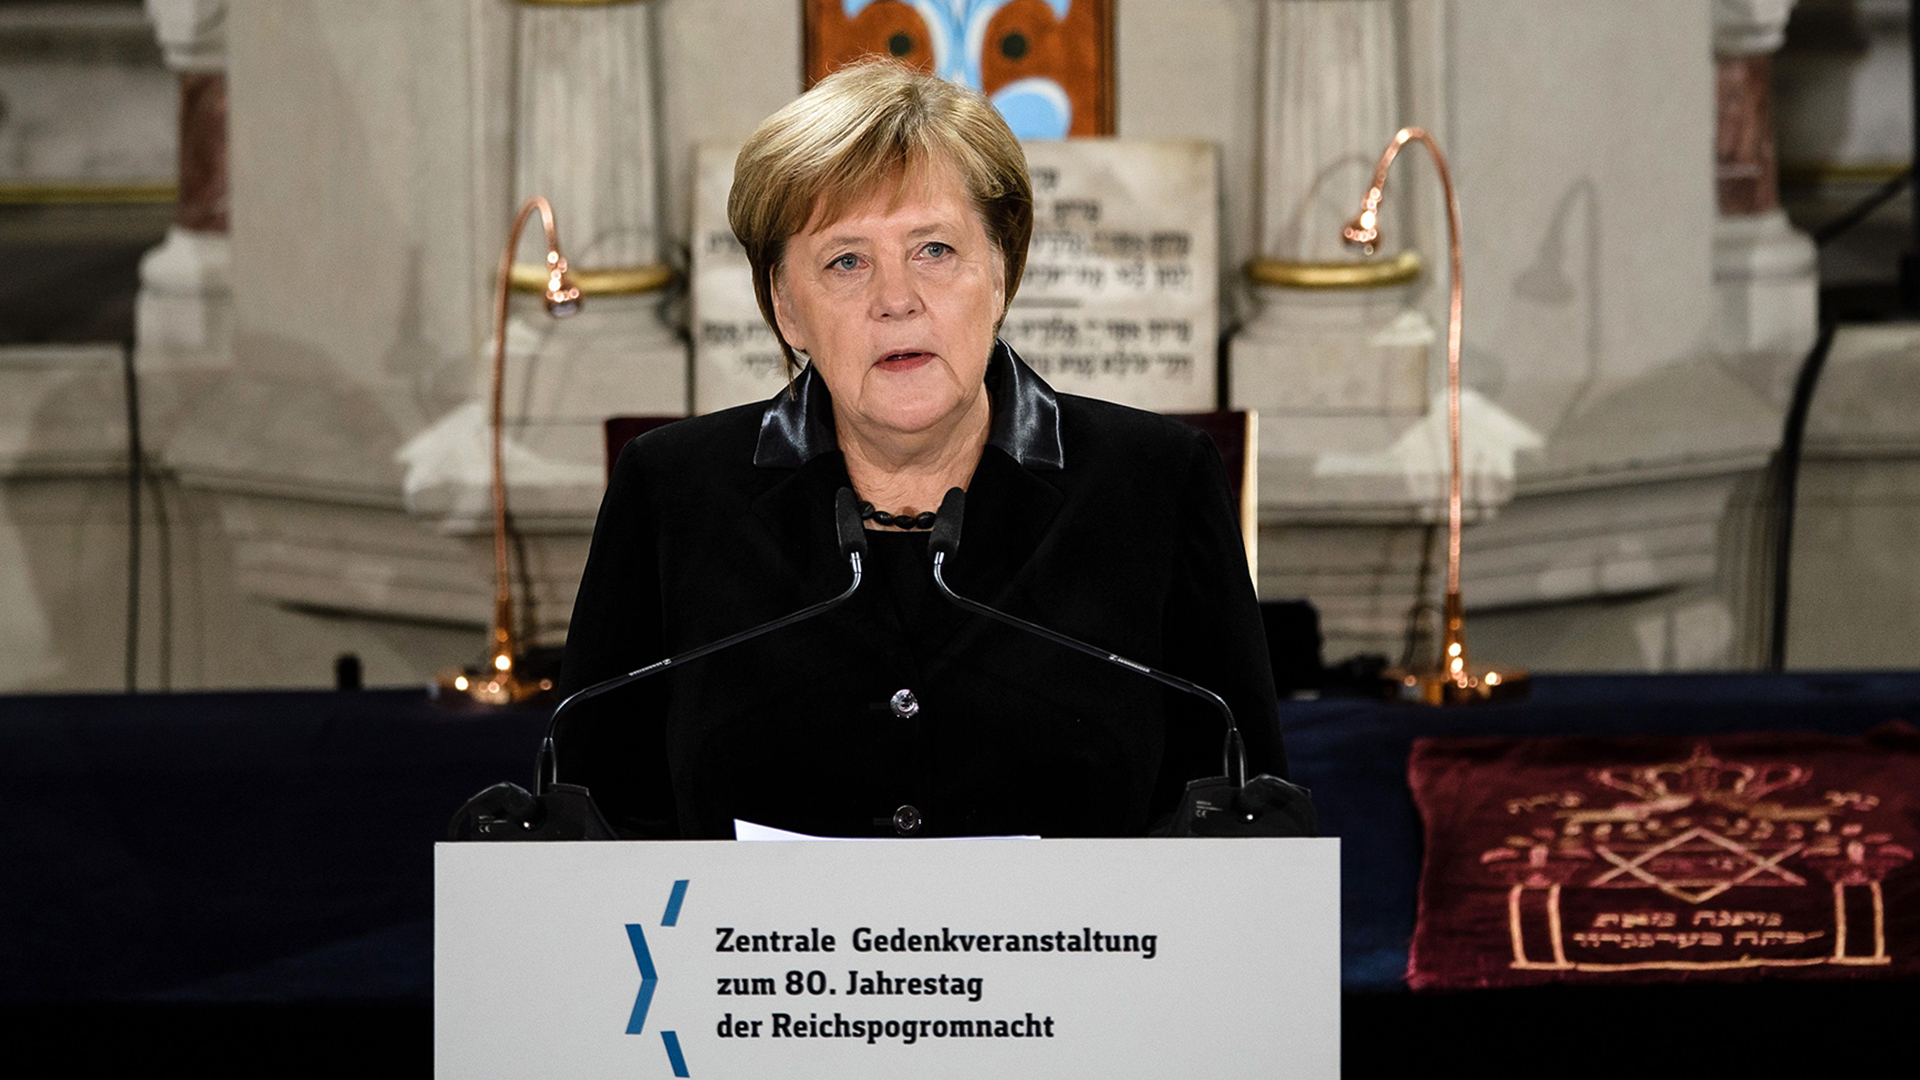 Angela Merkel spricht in der Synagoge Rykkestraße. | Bildquelle: CLEMENS BILAN/EPA-EFE/REX/Shutte